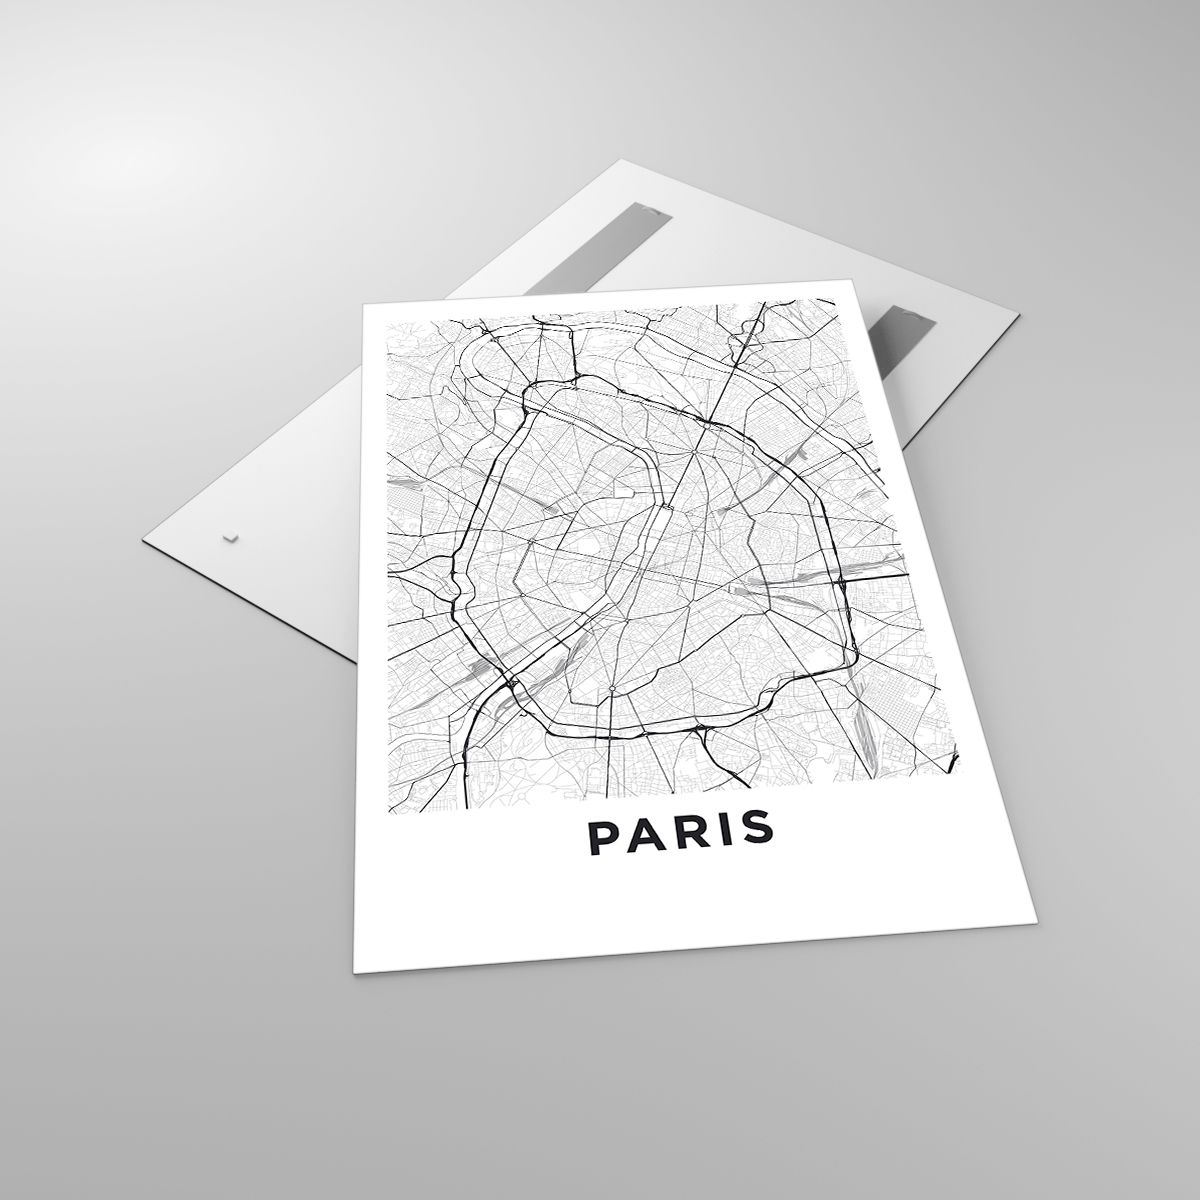 Obrazy Miasto, Obrazy Mapa Miasta, Obrazy Paryż, Obrazy Grafika, Obrazy Francja